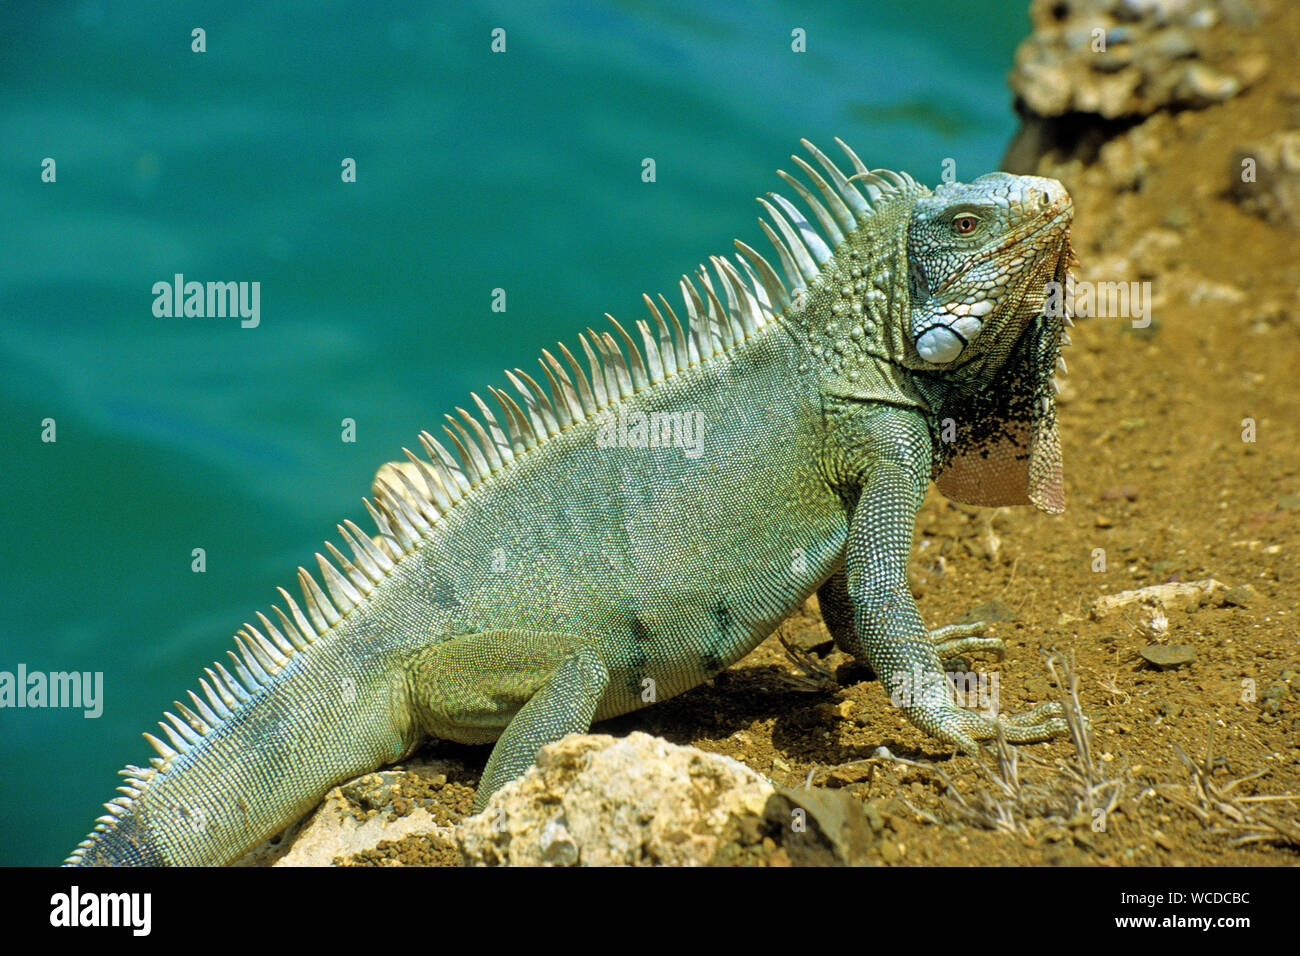 Iguane vert (Iguana iguana), partout pour trouver sur Bonaire, Antilles néerlandaises Banque D'Images